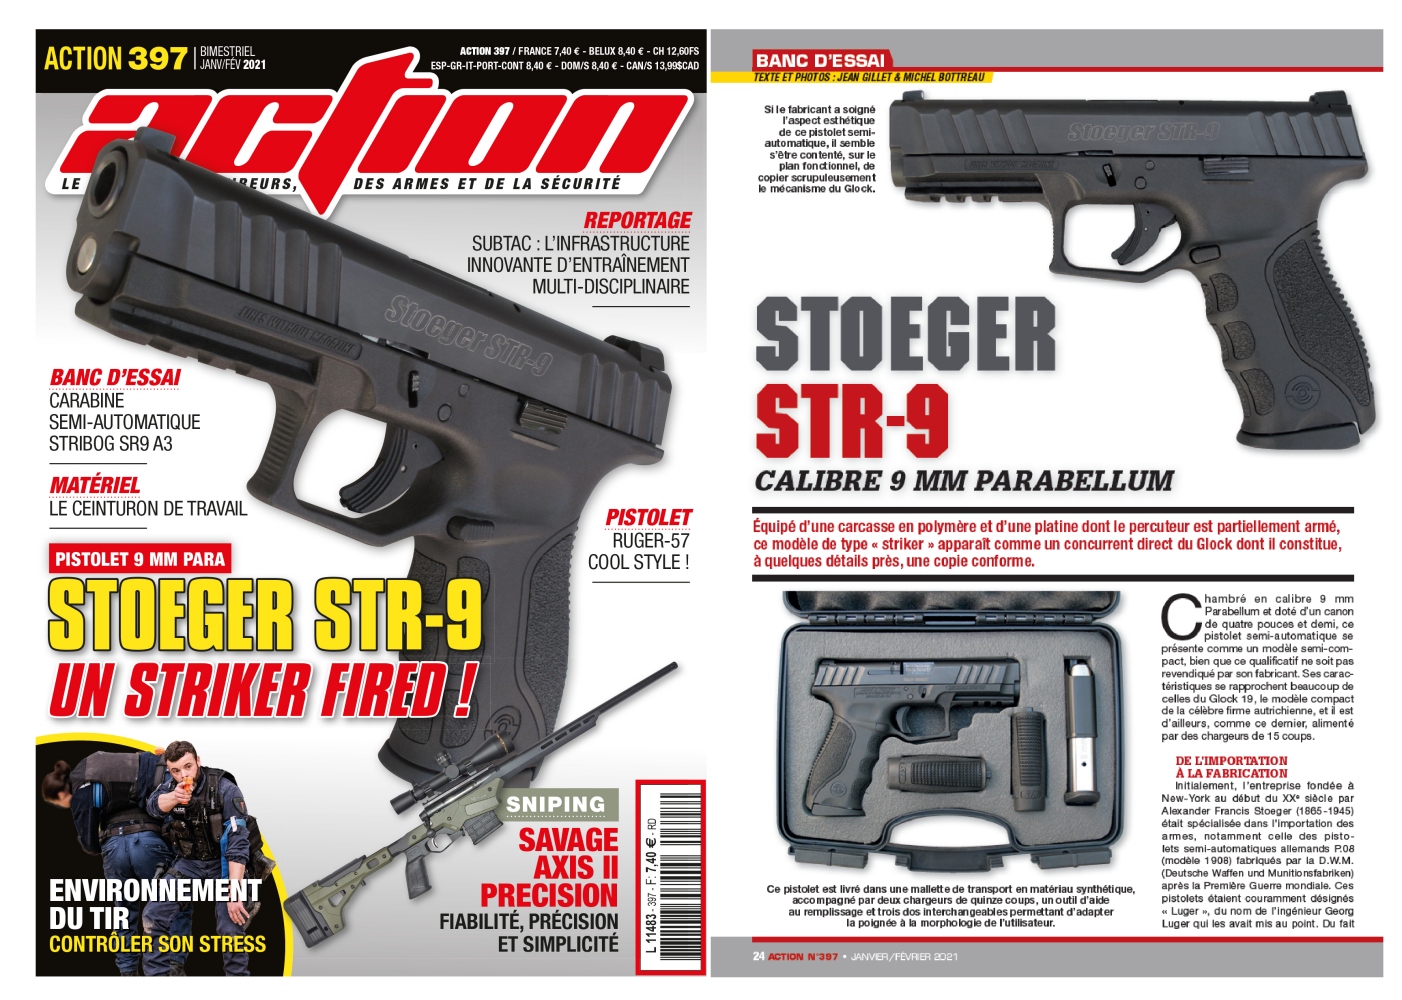 Le banc d'essai du pistolet Stoeger STR-9 a été publié sur 6 pages dans le magazine Action n°397 (janvier/février 2021)